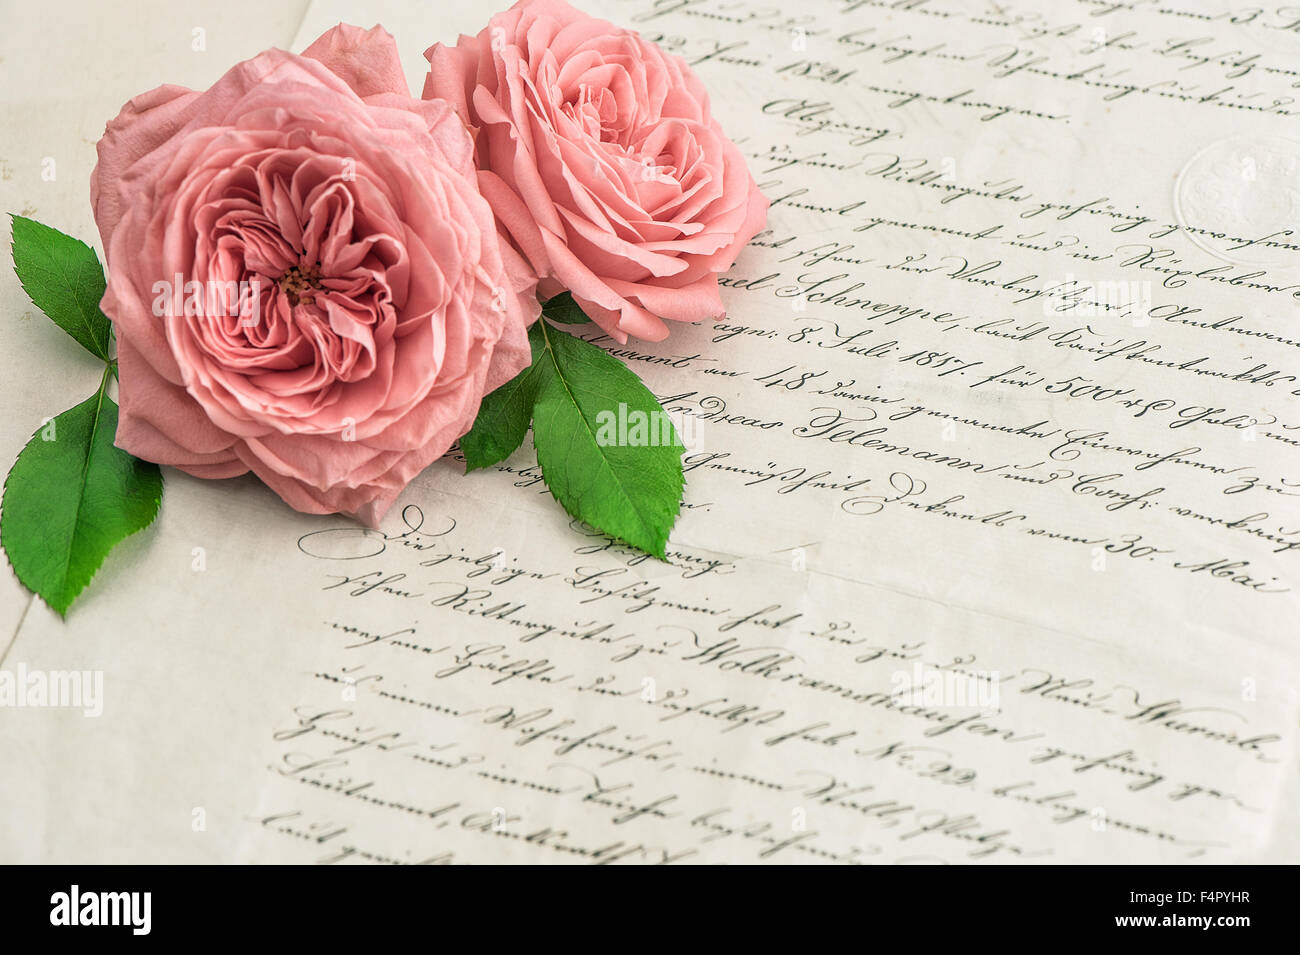 Fleurs rose rose antique sur lettre manuscrite. Vintage paper background. Selective focus Banque D'Images